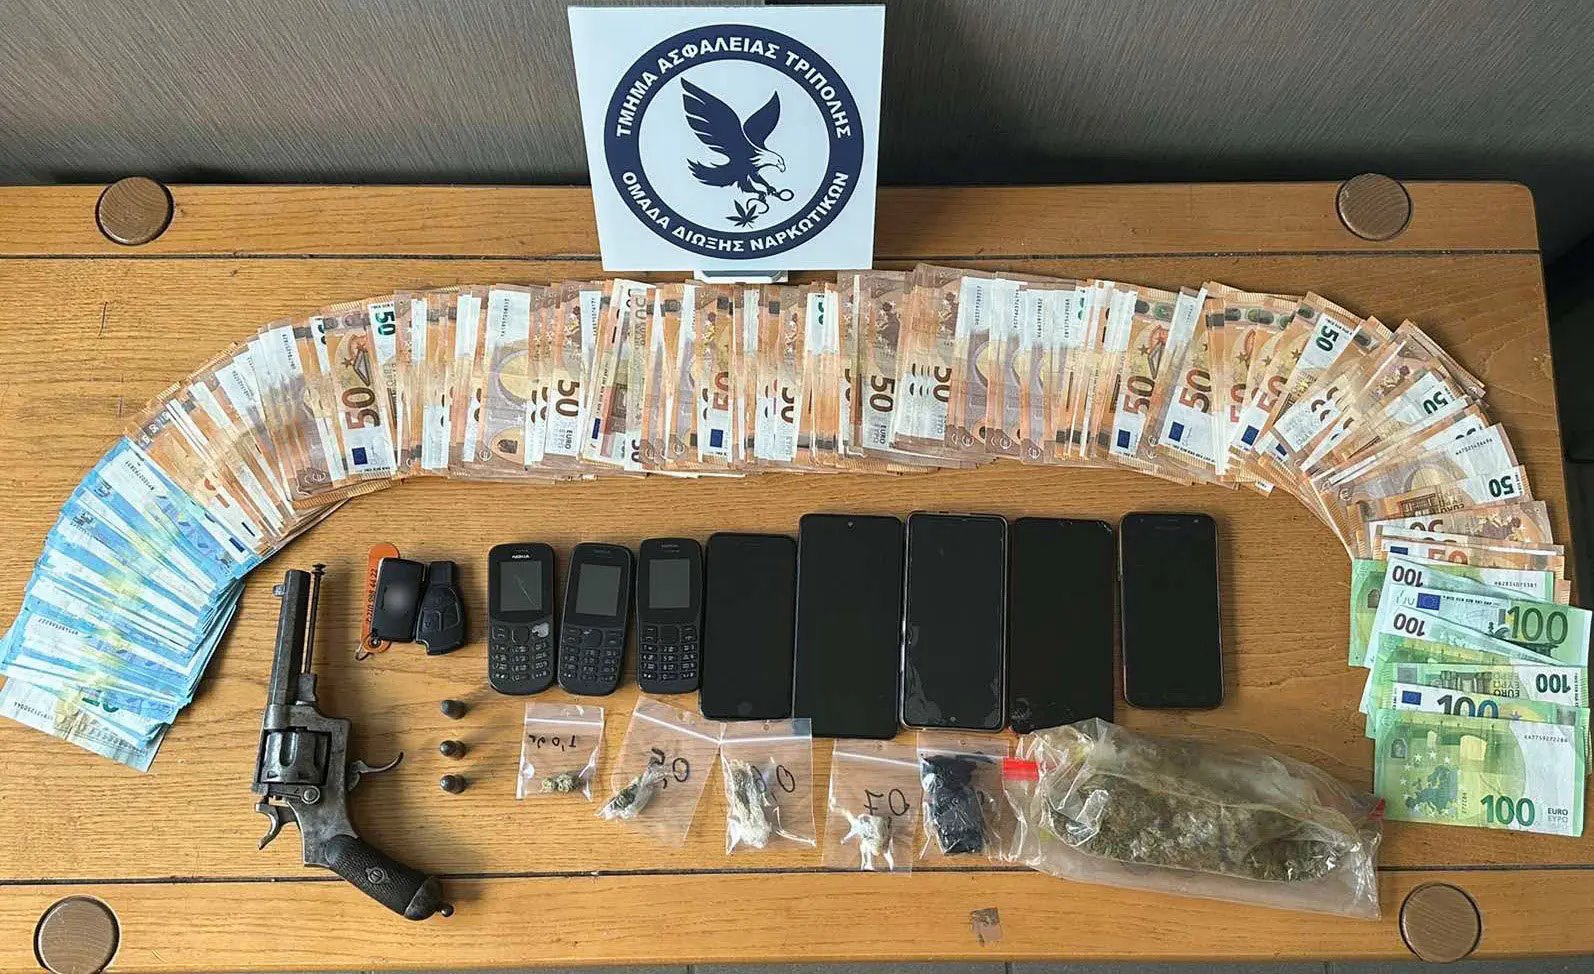 Εξαρθρώθηκε εγκληματική οργάνωση στην Αρκαδία που διακινούσε ποσότητες ναρκωτικών - Συνελήφθησαν 6 άτομα